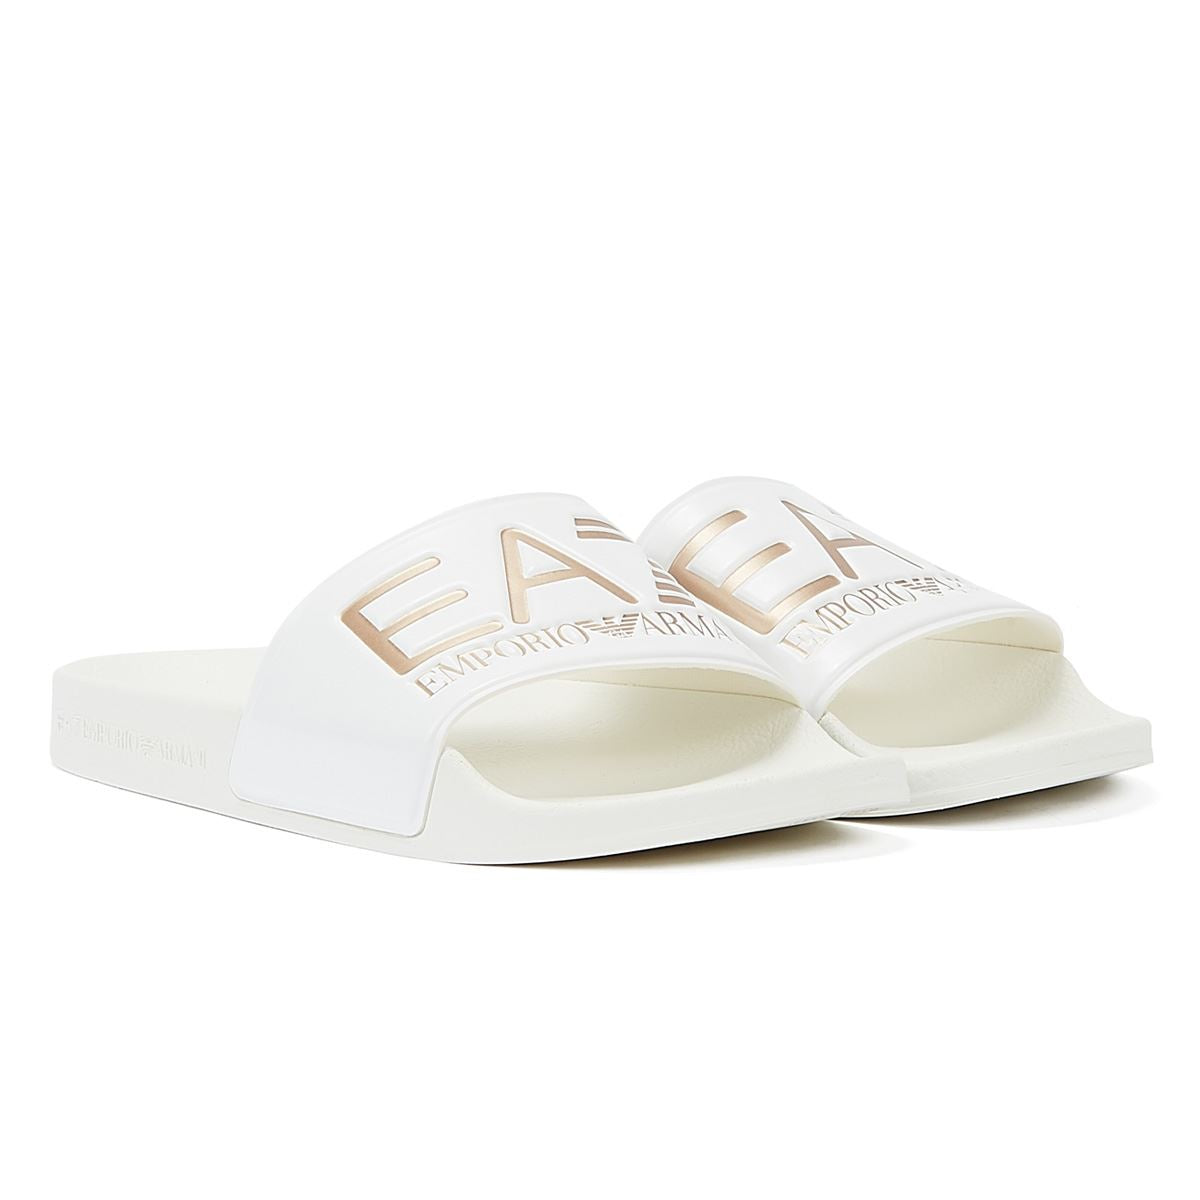 Ea7 Emporio Armani Seaworld Slide Shiny Women’s White Slides